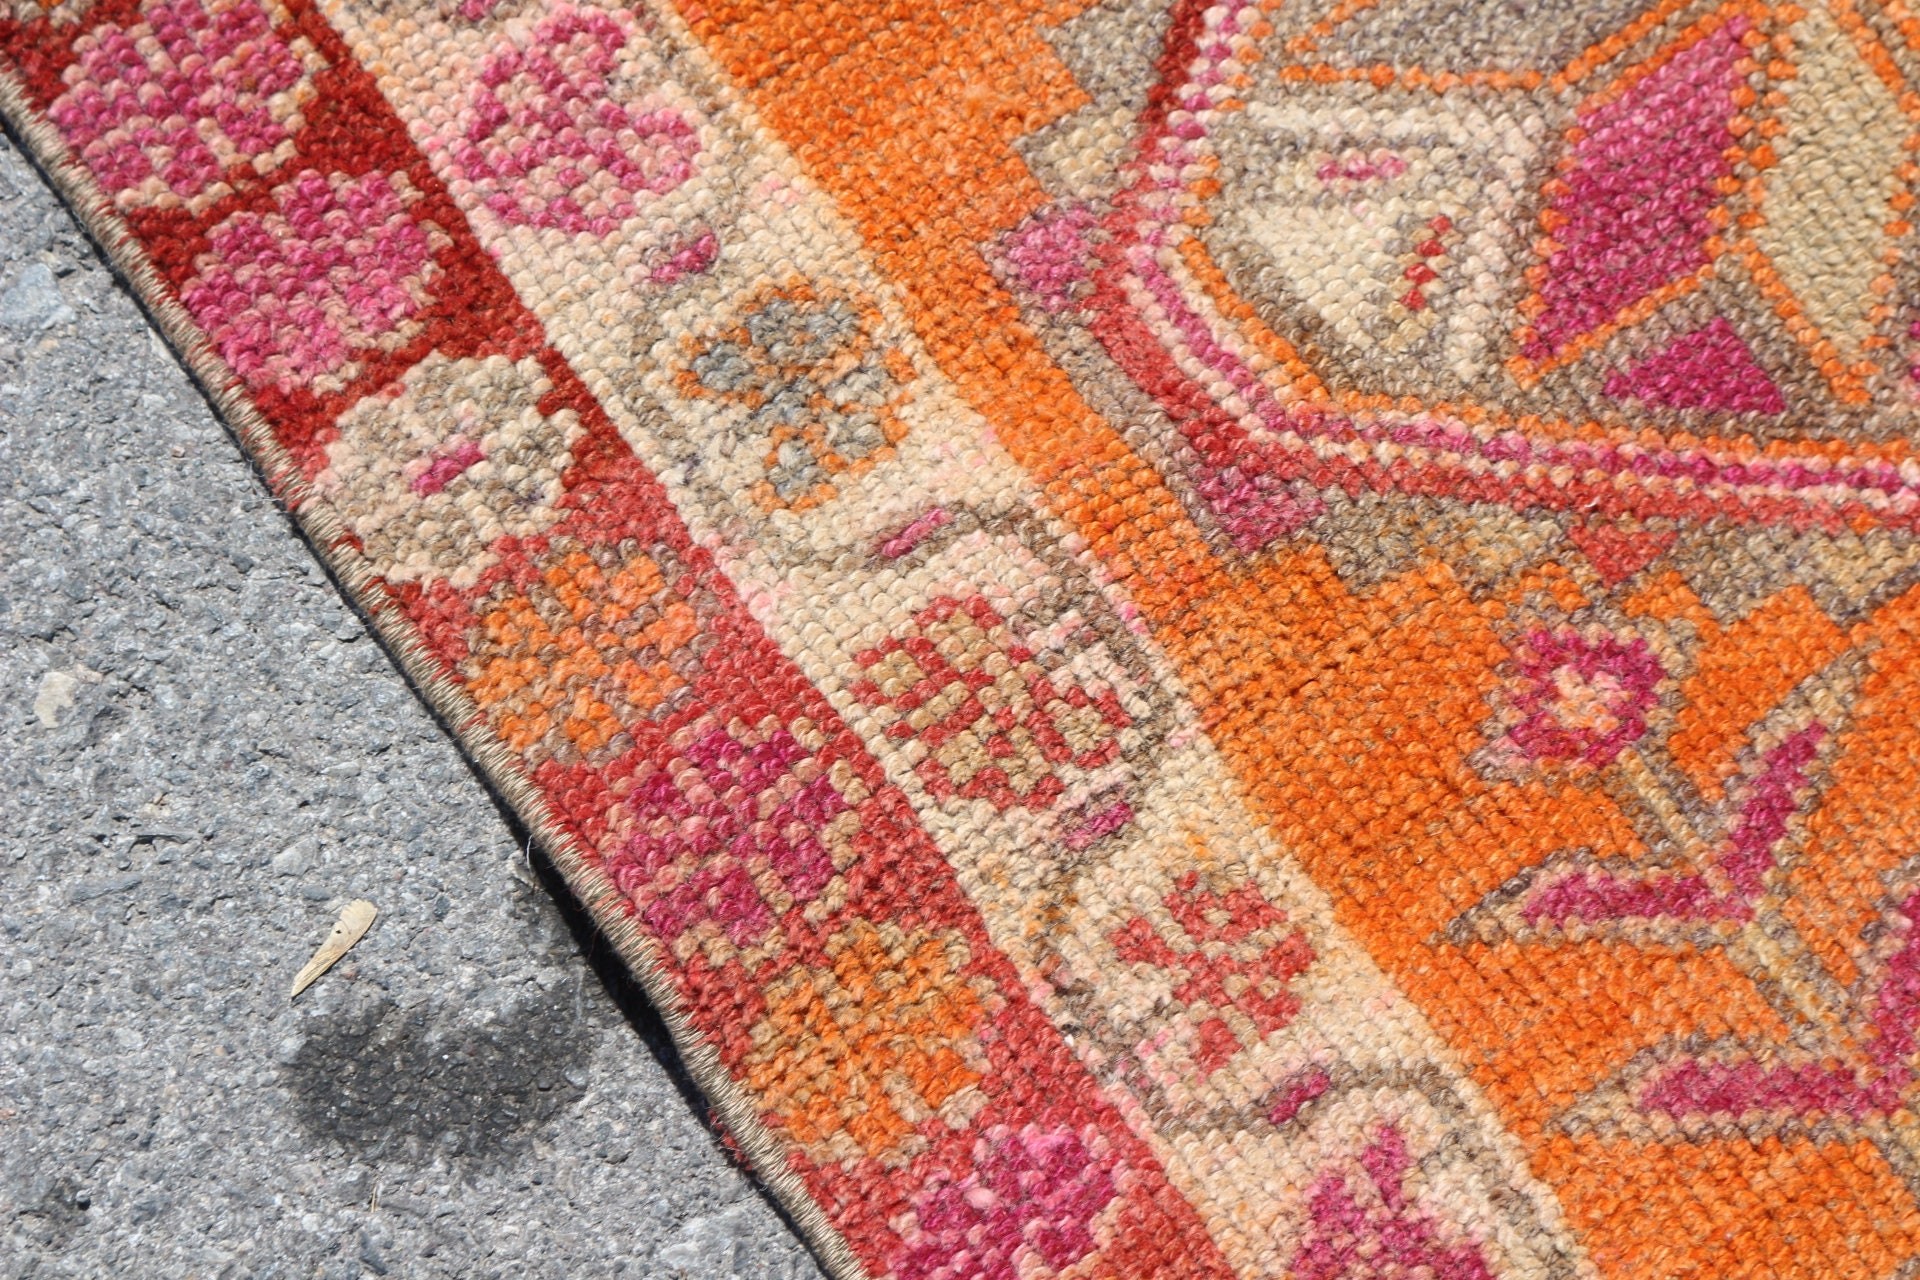 Corridor Rug, Turkish Rugs, Antique Rugs, Floor Rug, Kitchen Rug, Vintage Rug, Orange  2.6x10.4 ft Runner Rugs